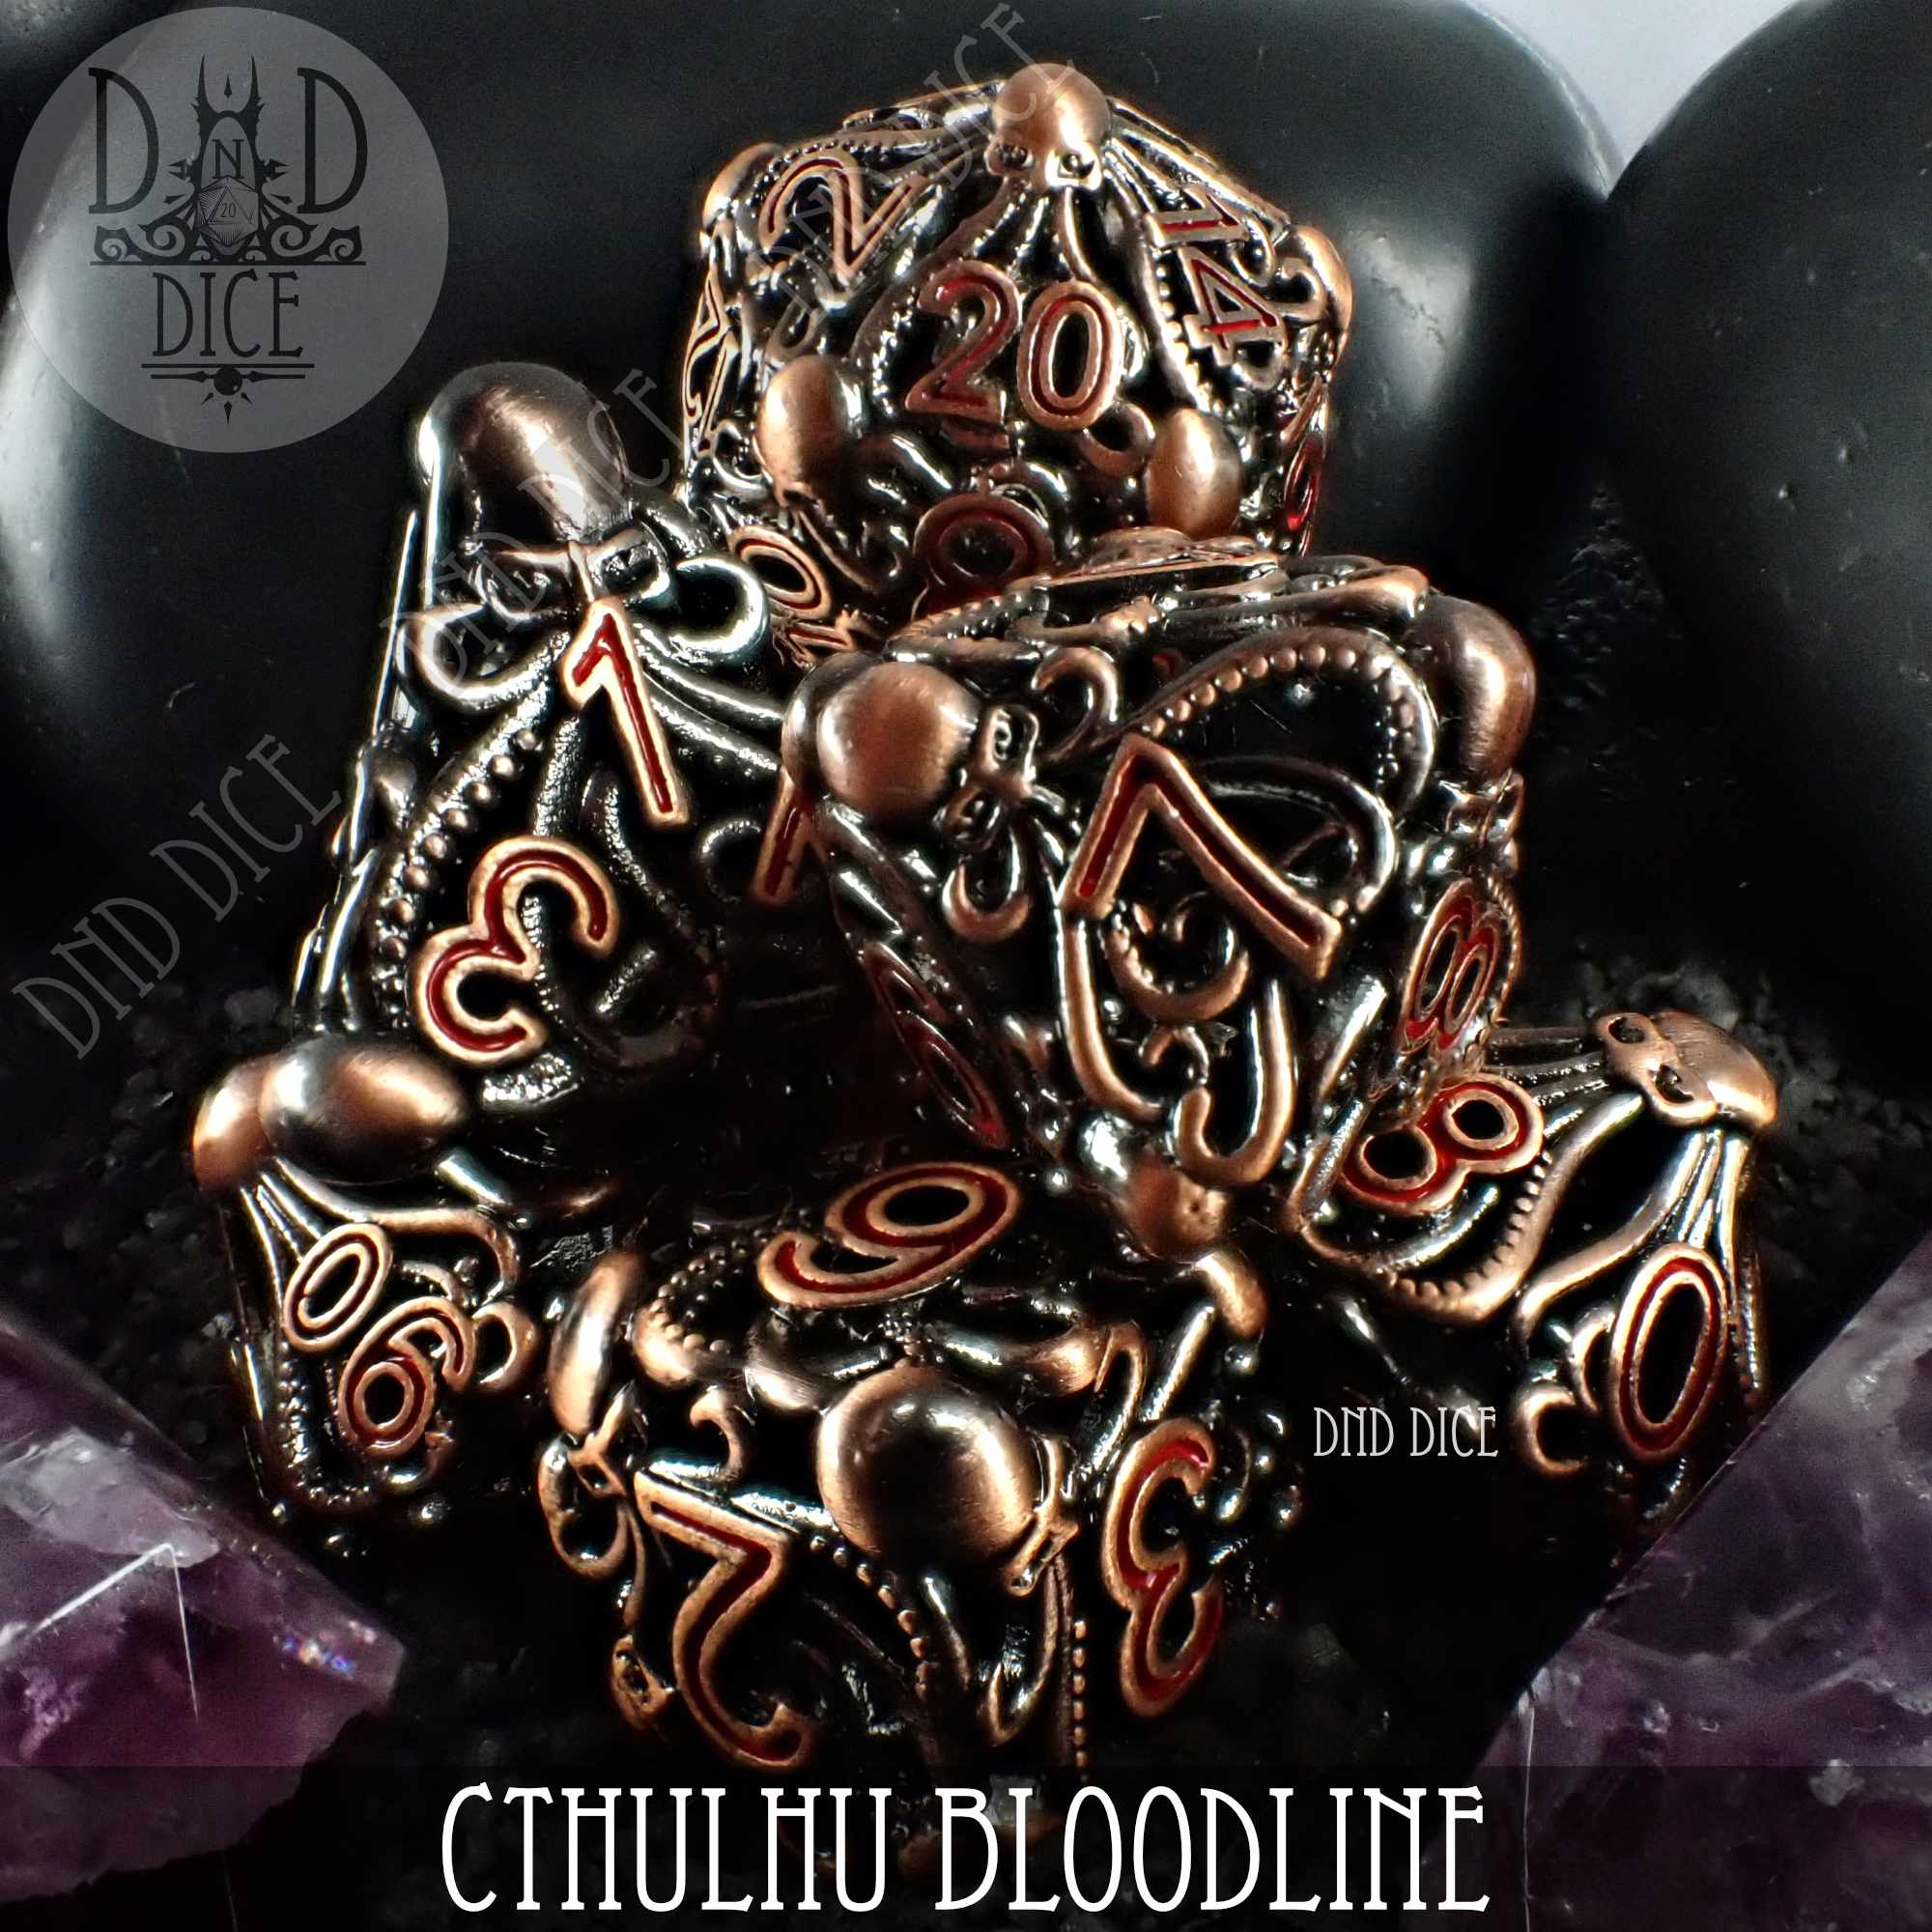 Cthulhu Bloodline Metal Dice Set (Gift Box)